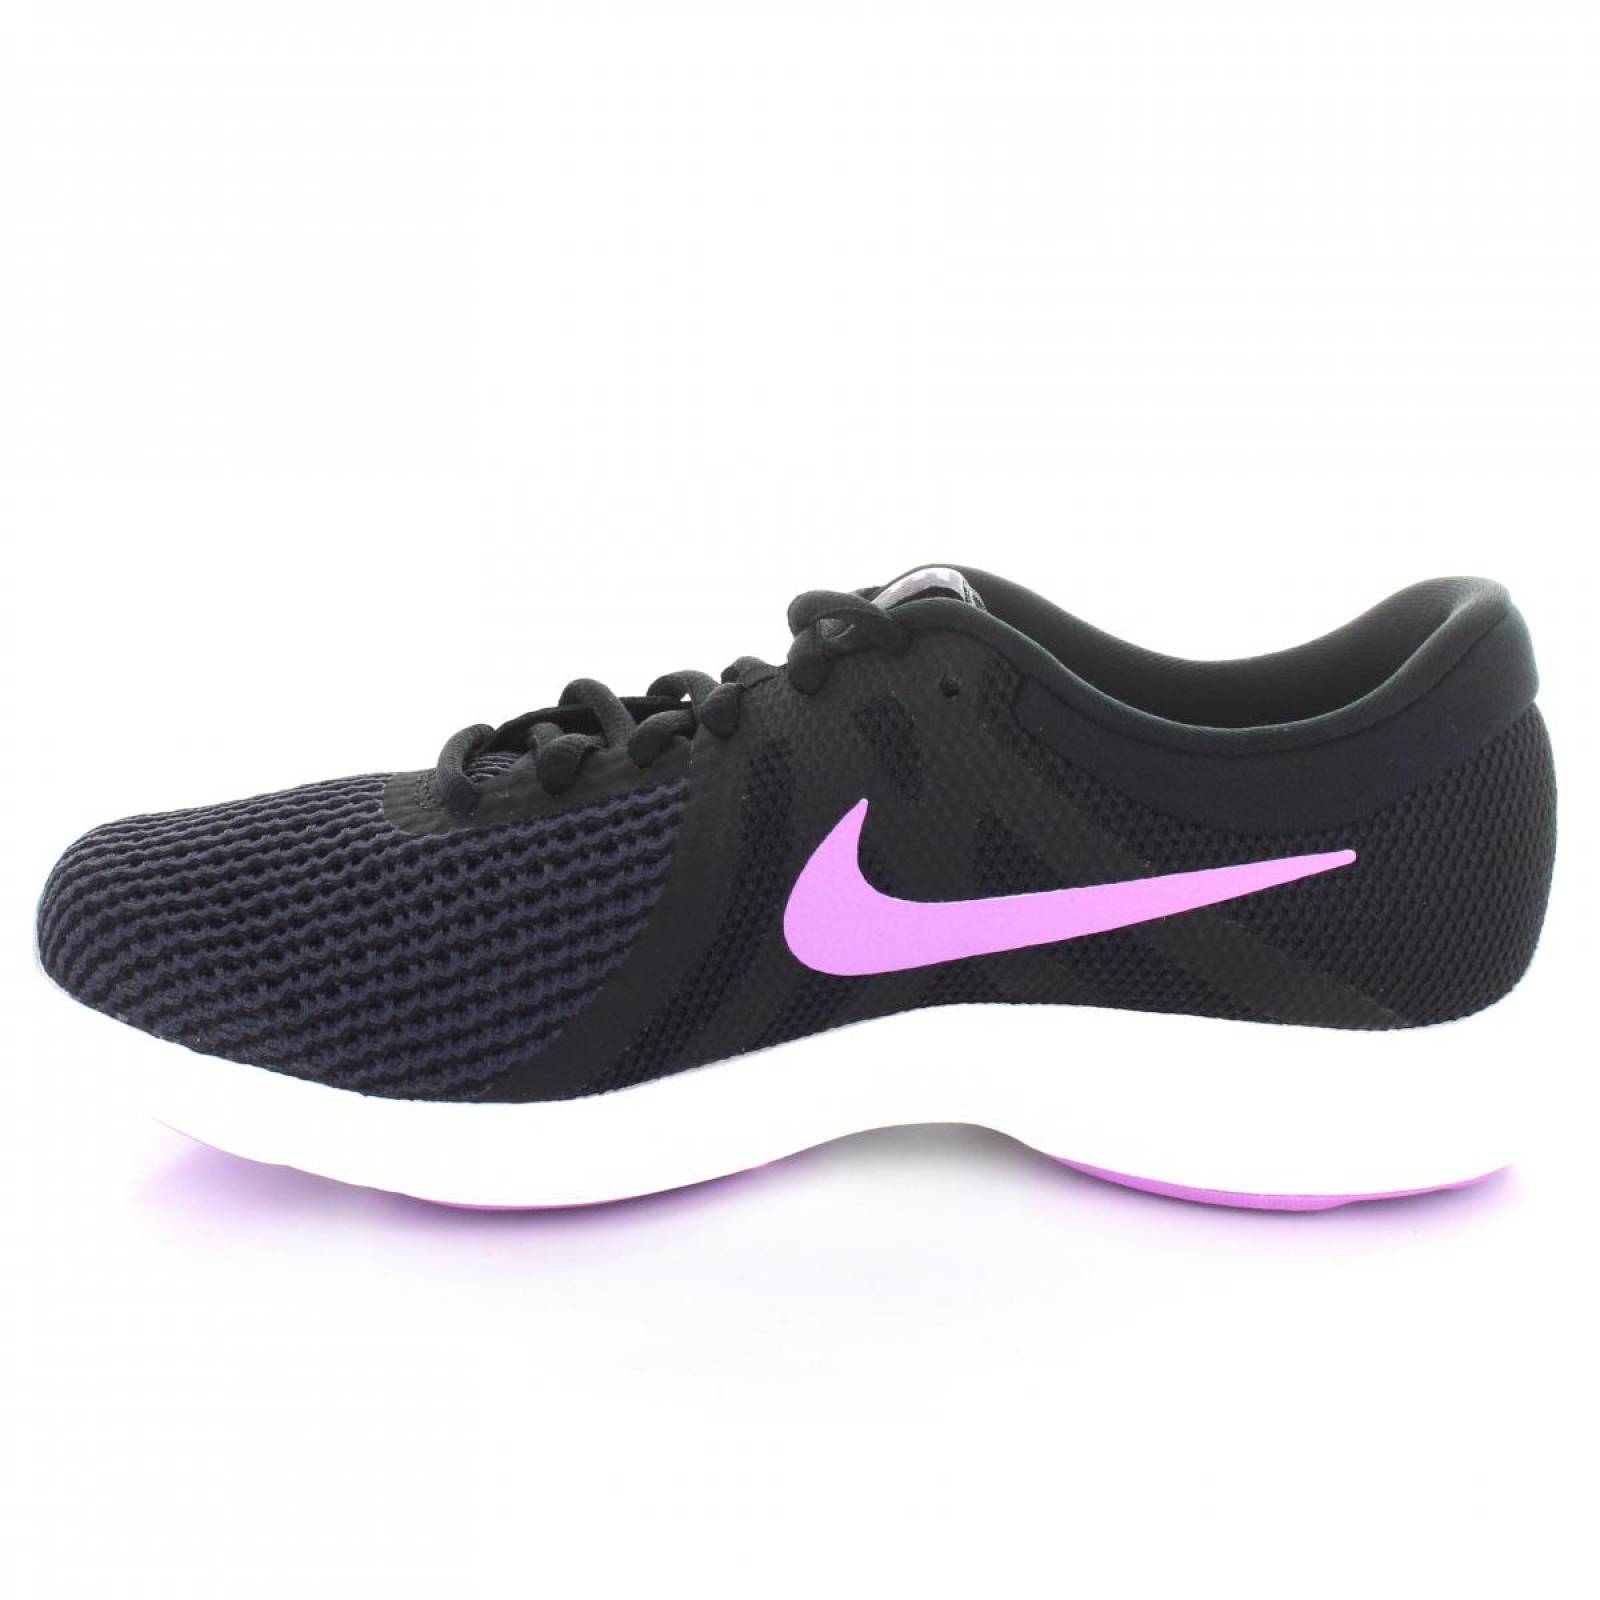 Tenis para Mujer Nike 908999 011 051592 Color Negro morado